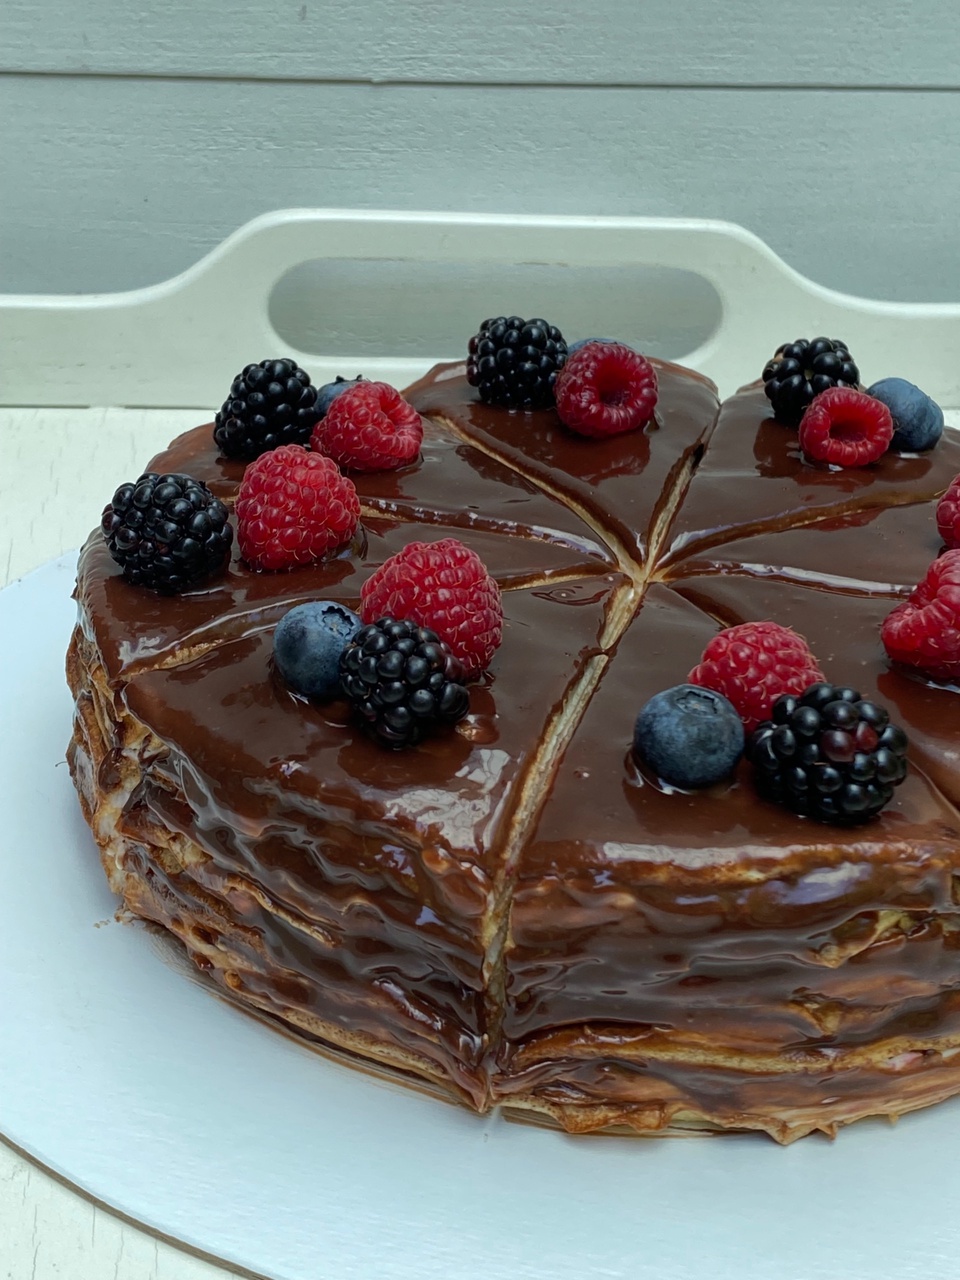 Блинный торт - 1 700 ₽, заказать онлайн.